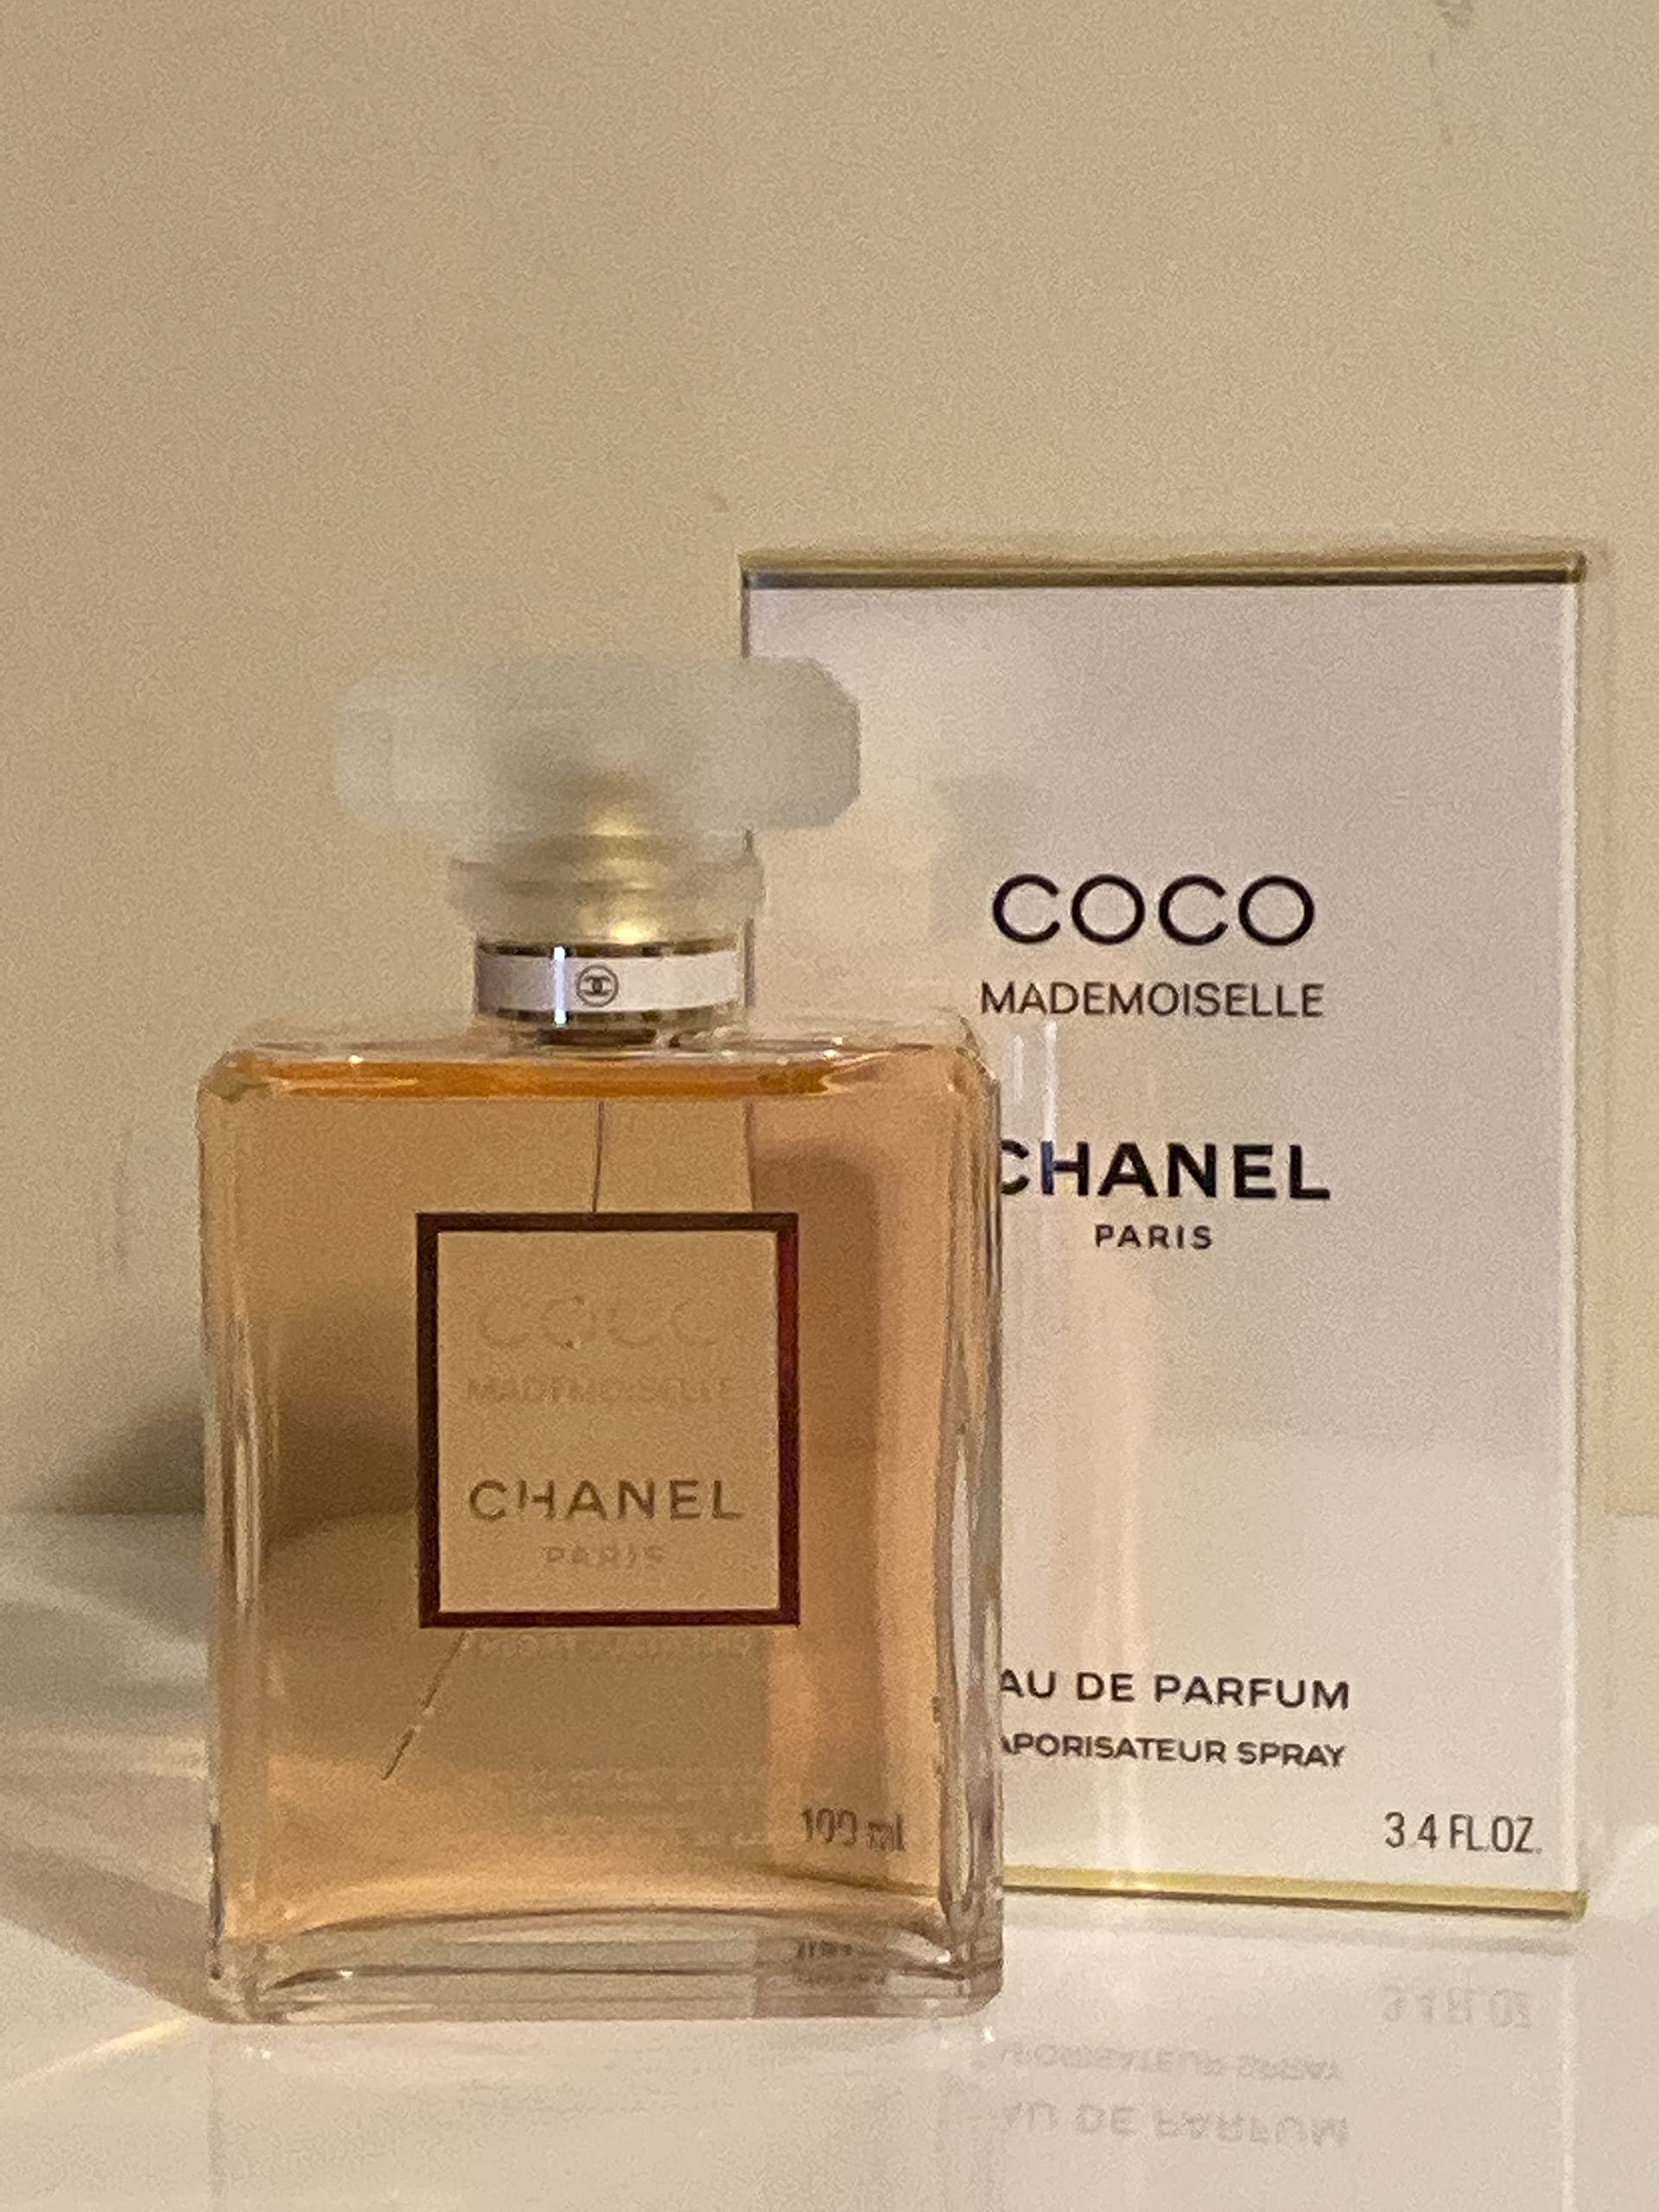 chanel women's perfume gift set